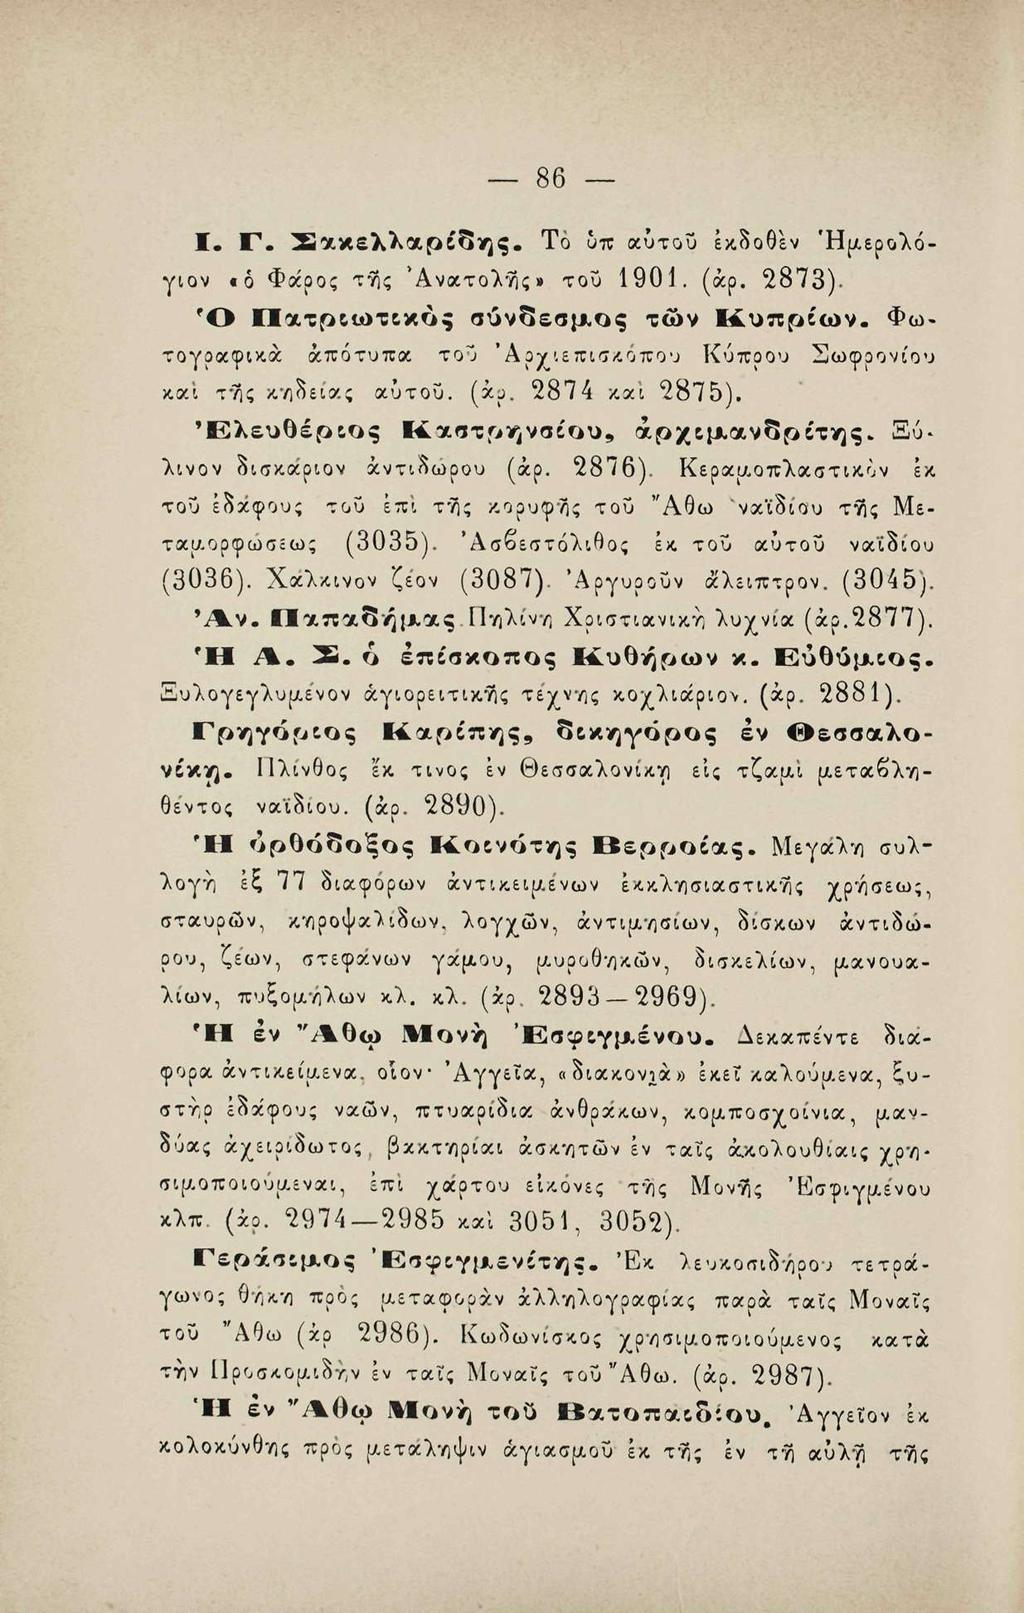 86 Ι. Γ. Χακελλαρεο'ης. Το υπ αύτοΰ εκδοθέν Ήμερολόγιον «δ Φάρος τ^ς Ανατολάς» τοΰ 1901. (άρ. 2873). Ό ϊΐατρςιοτ&κος σύνδεσμος τον Κυπρεων.